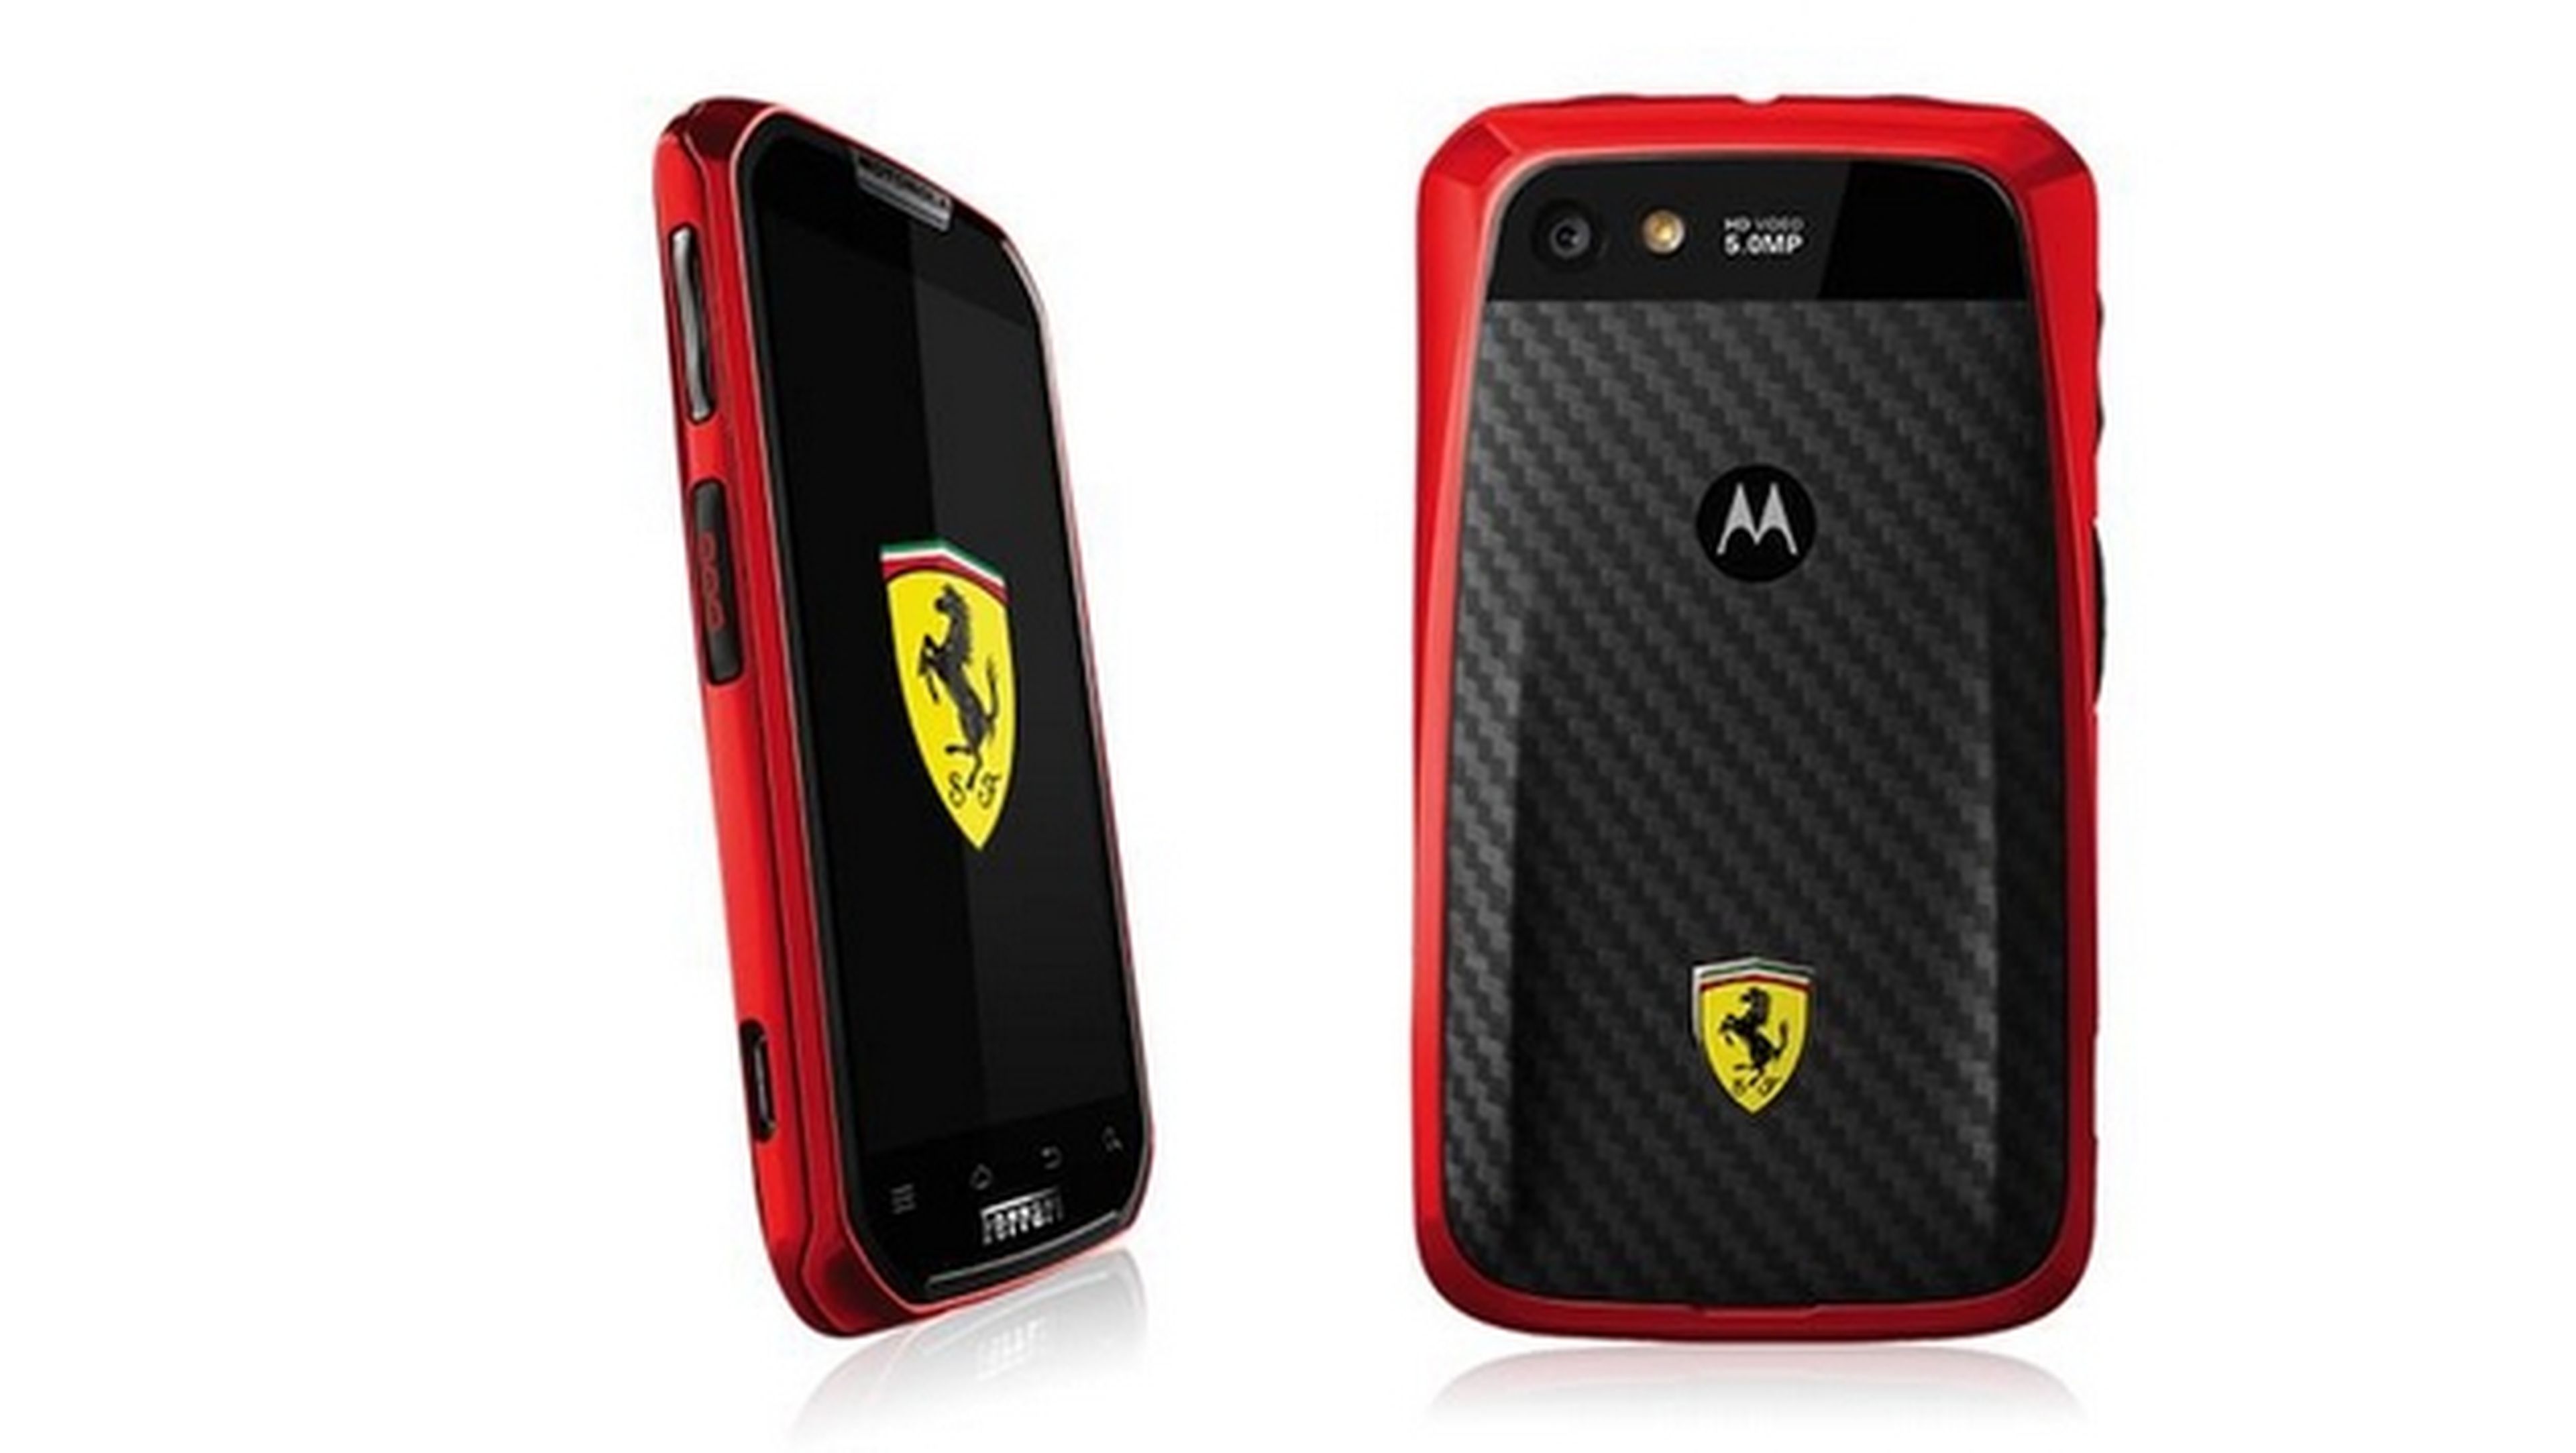 Motorola podrÃ­a lanzar el Moto G 4G LTE, asÃ­ como una ediciÃ³n Ferrari, y un Moto G de bajo coste llamado Moto E